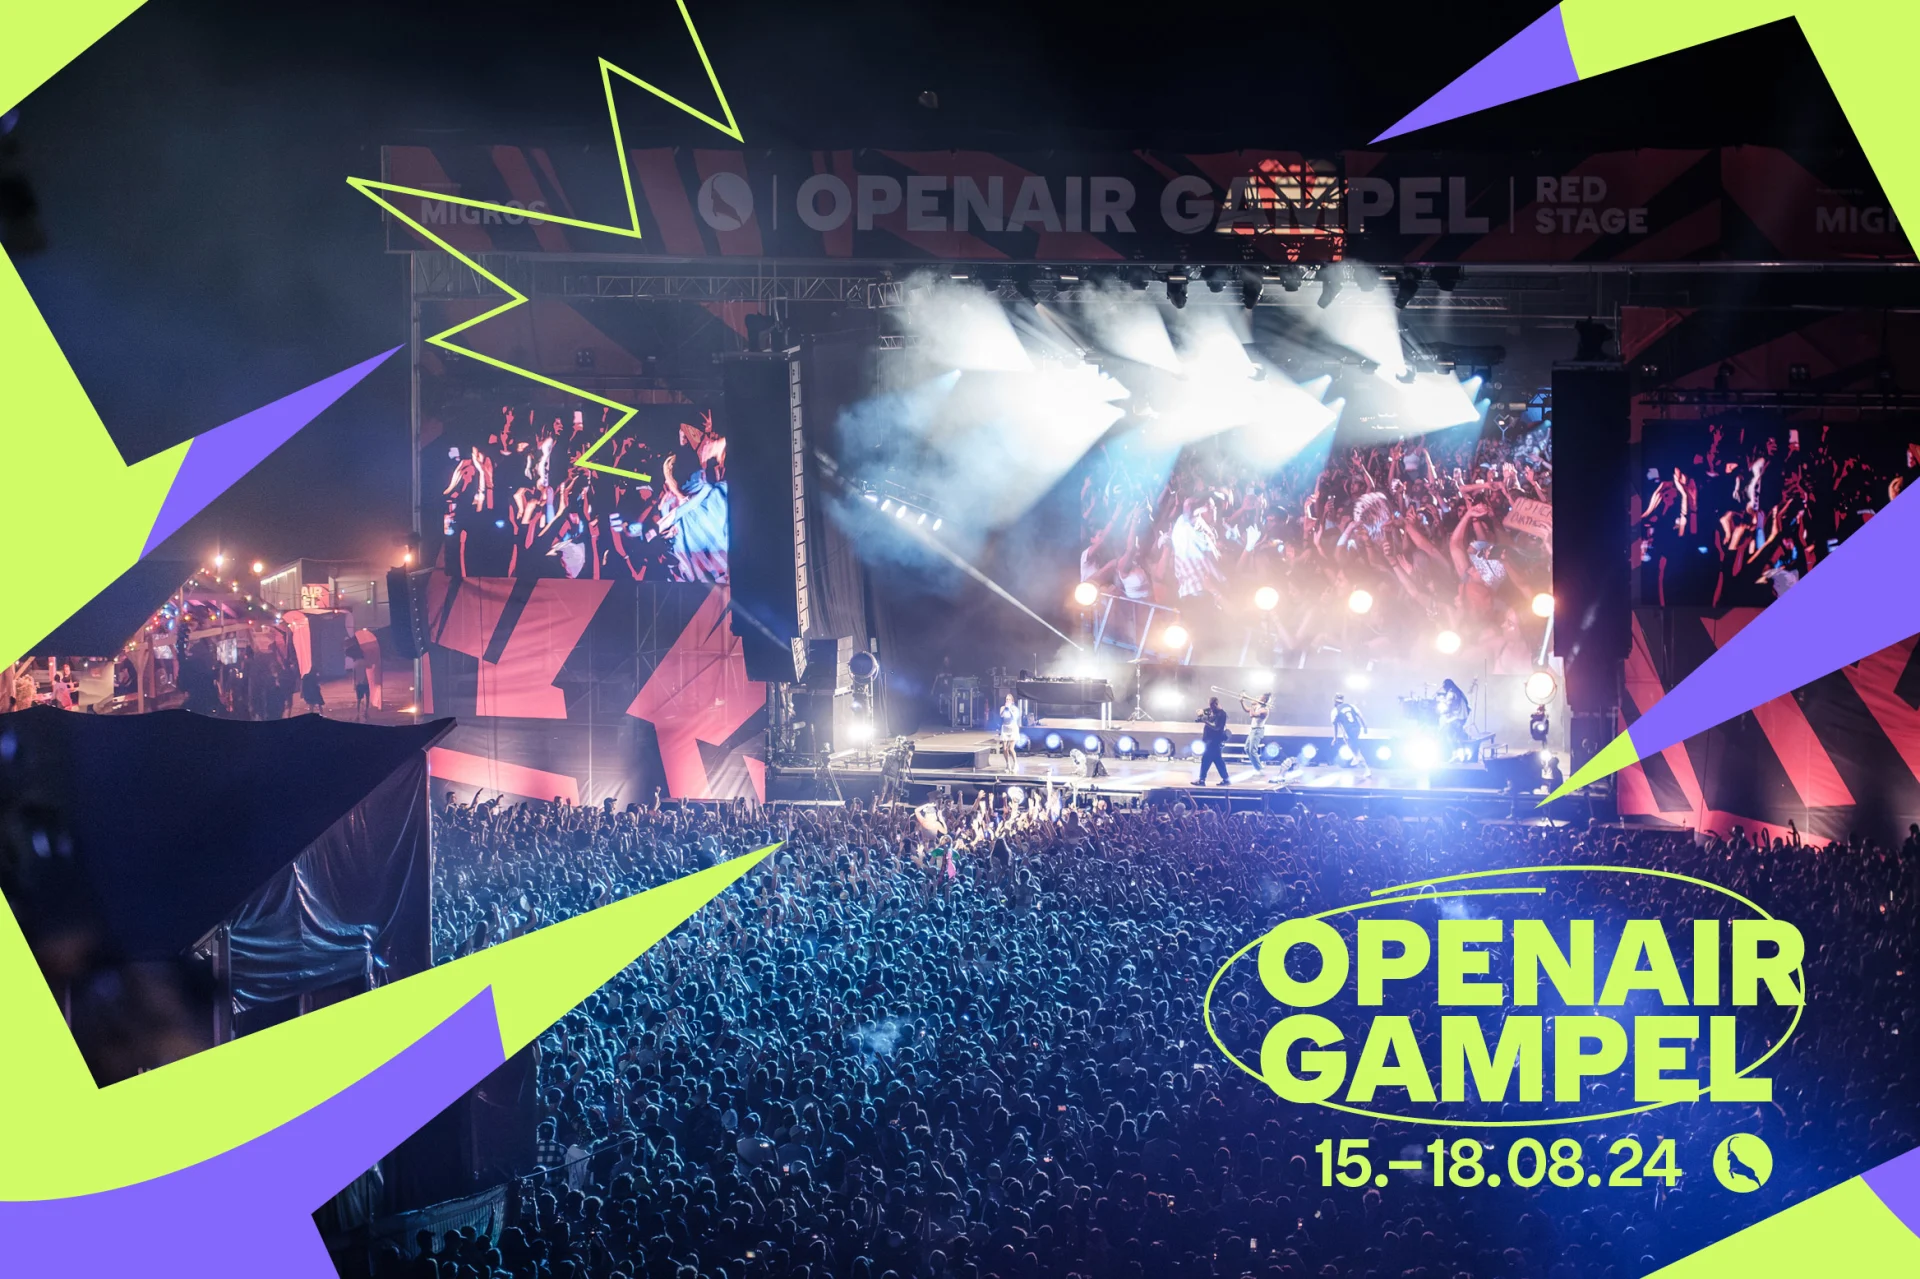 Logo dell'Openair Gampel e atmosfera da festival davanti al palco del concerto